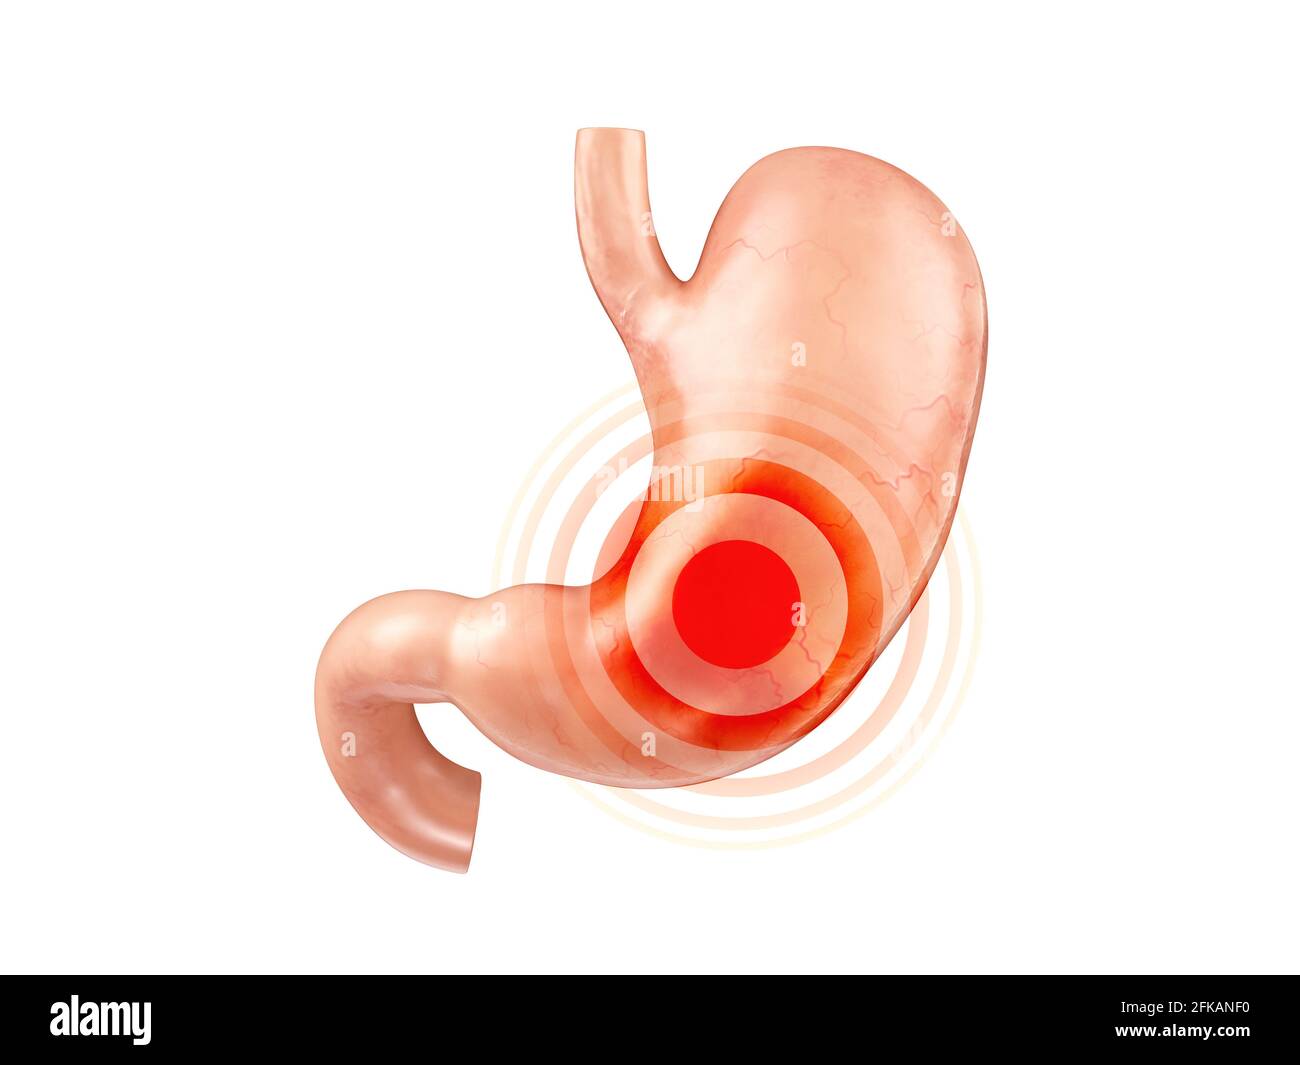 Anatómicamente precisa y realista 3D ilustración del órgano interno humano - estómago con duodeno aislado sobre fondo blanco Foto de stock